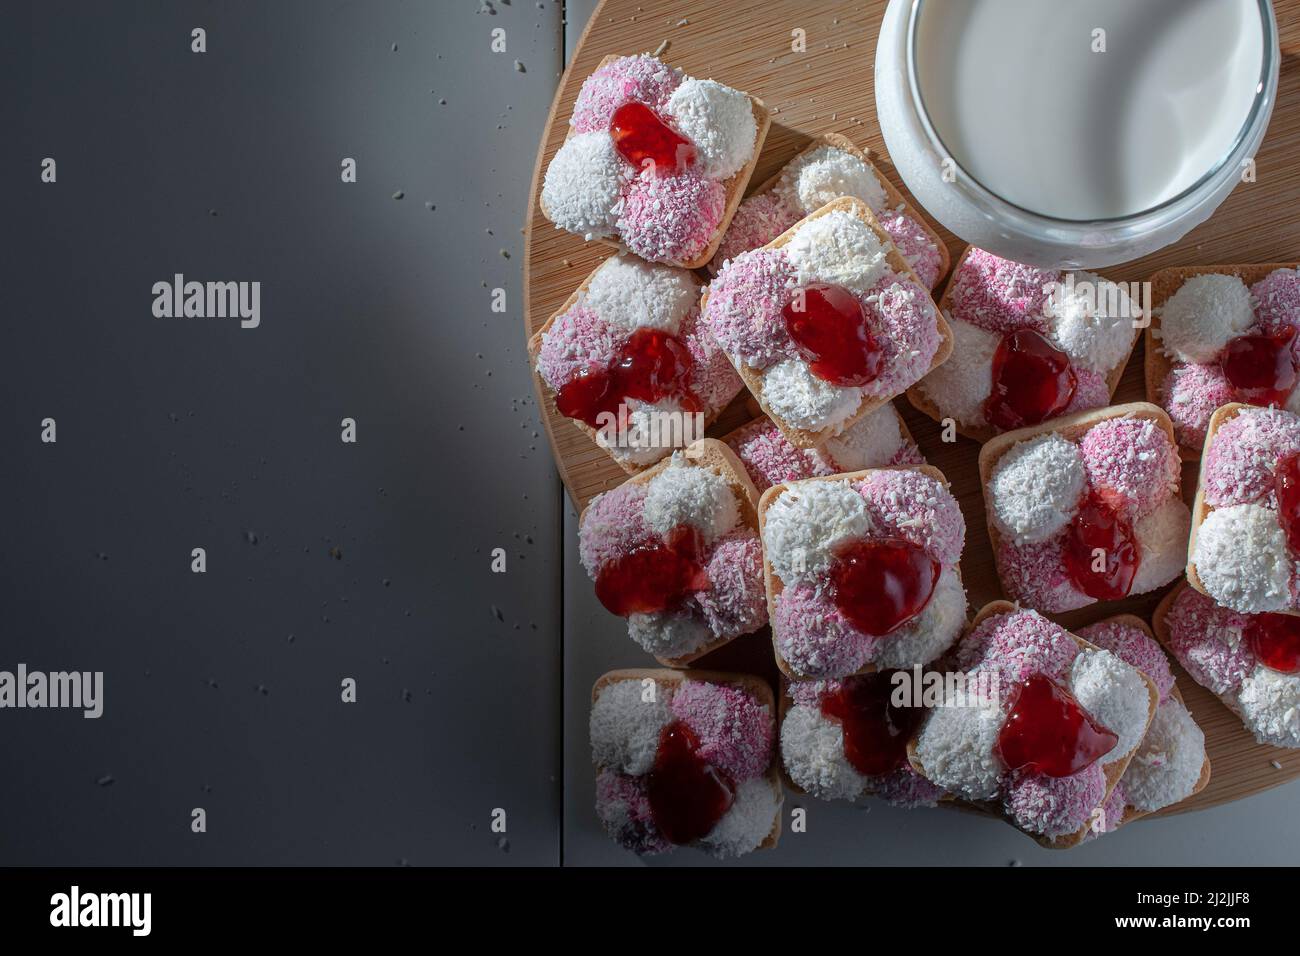 Kekse mit Lammfleisch, getrockneten Kokosflocken und Erdbeermarmelade, mit einem Glas eiskalter Milch auf der Seite Stockfoto